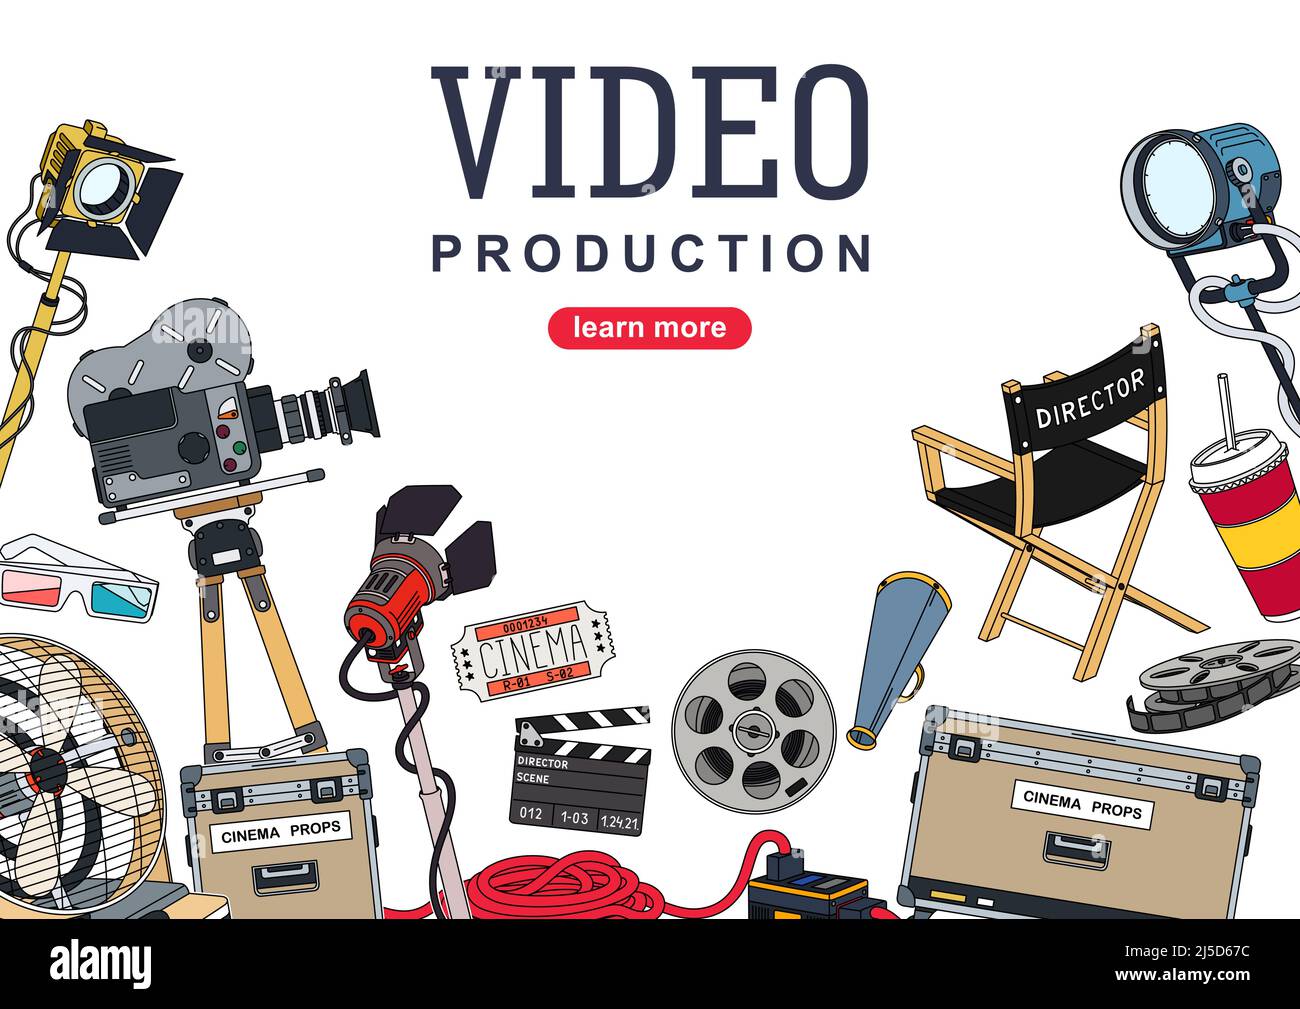 Videoproduktion. Hintergrunddesign mit einer Reihe von Geräten und Werkzeugen für die Filmproduktion und die Erstellung von Videoinhalten. Vektorgrafik Stock Vektor